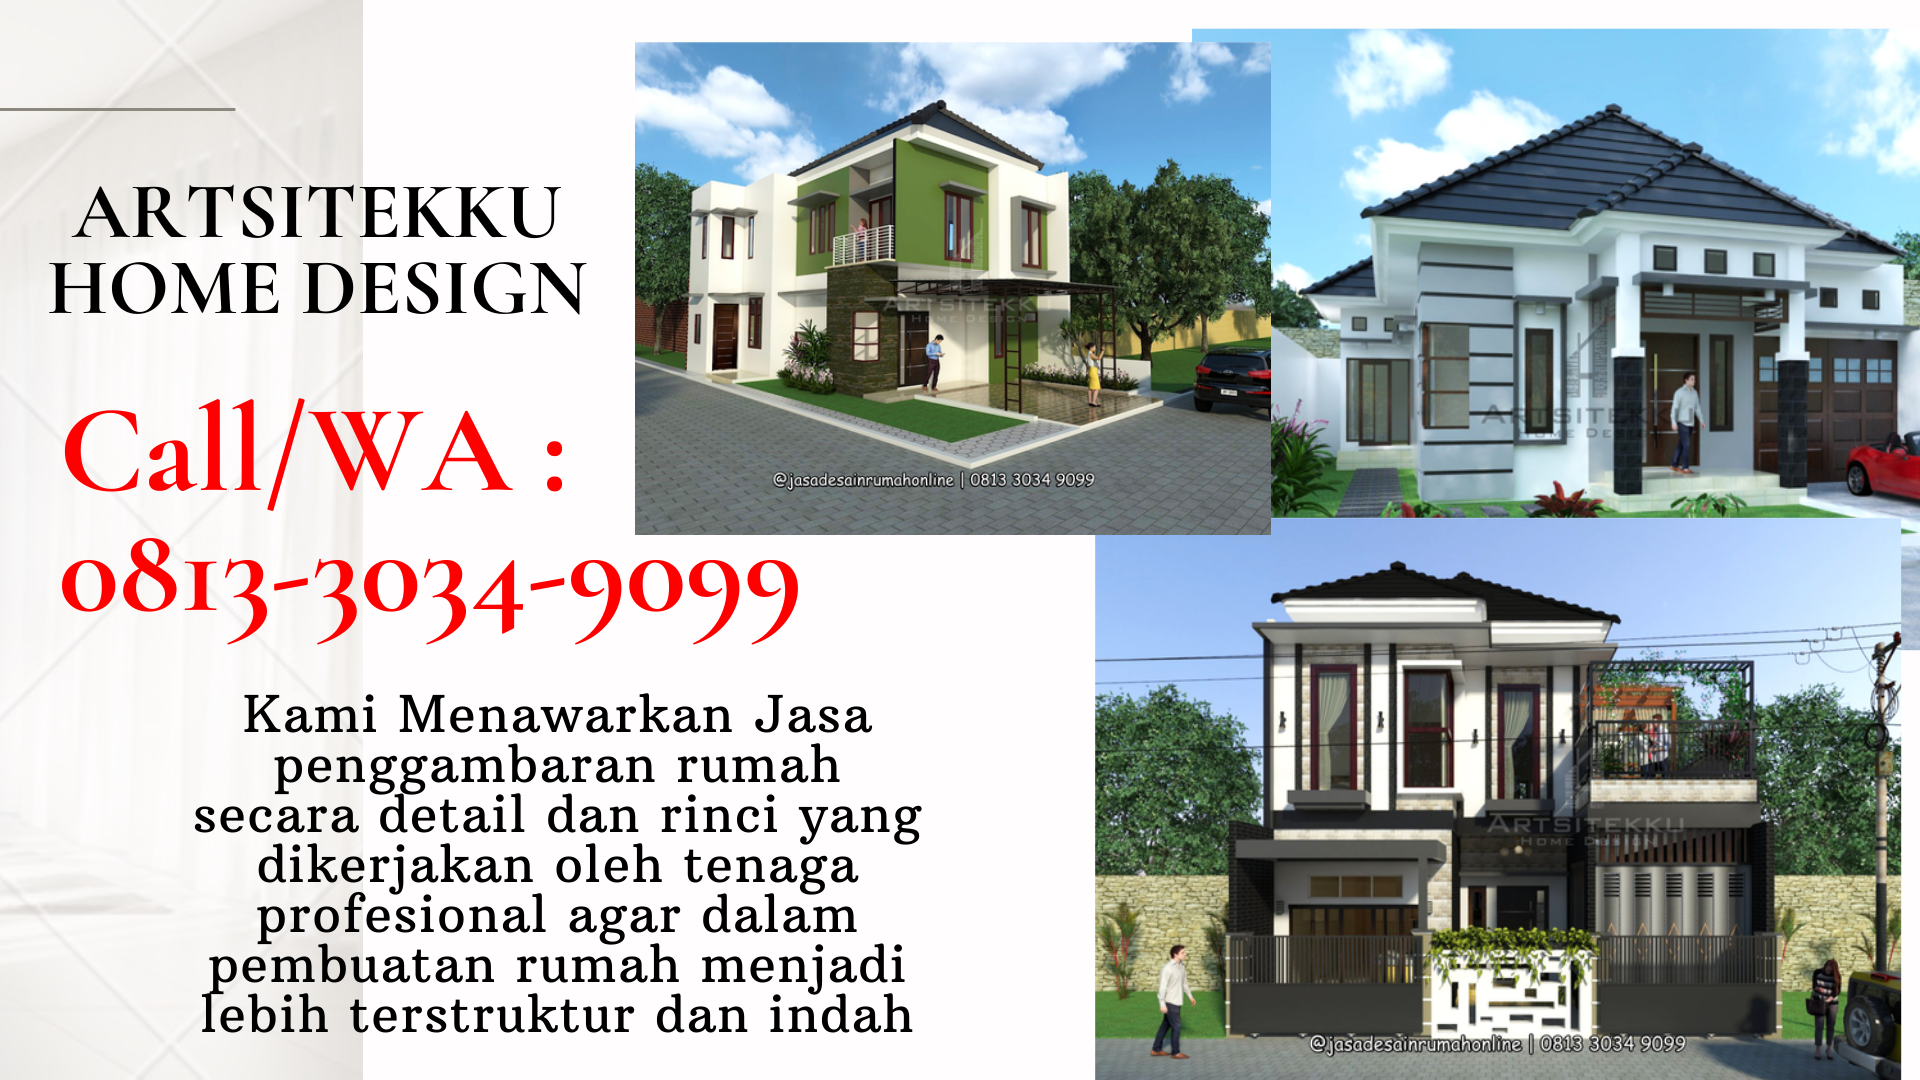 Call Wa 0813 5828 2515 Jasa Desain Rumah 2019 Batu By Desain Malang Online Medium